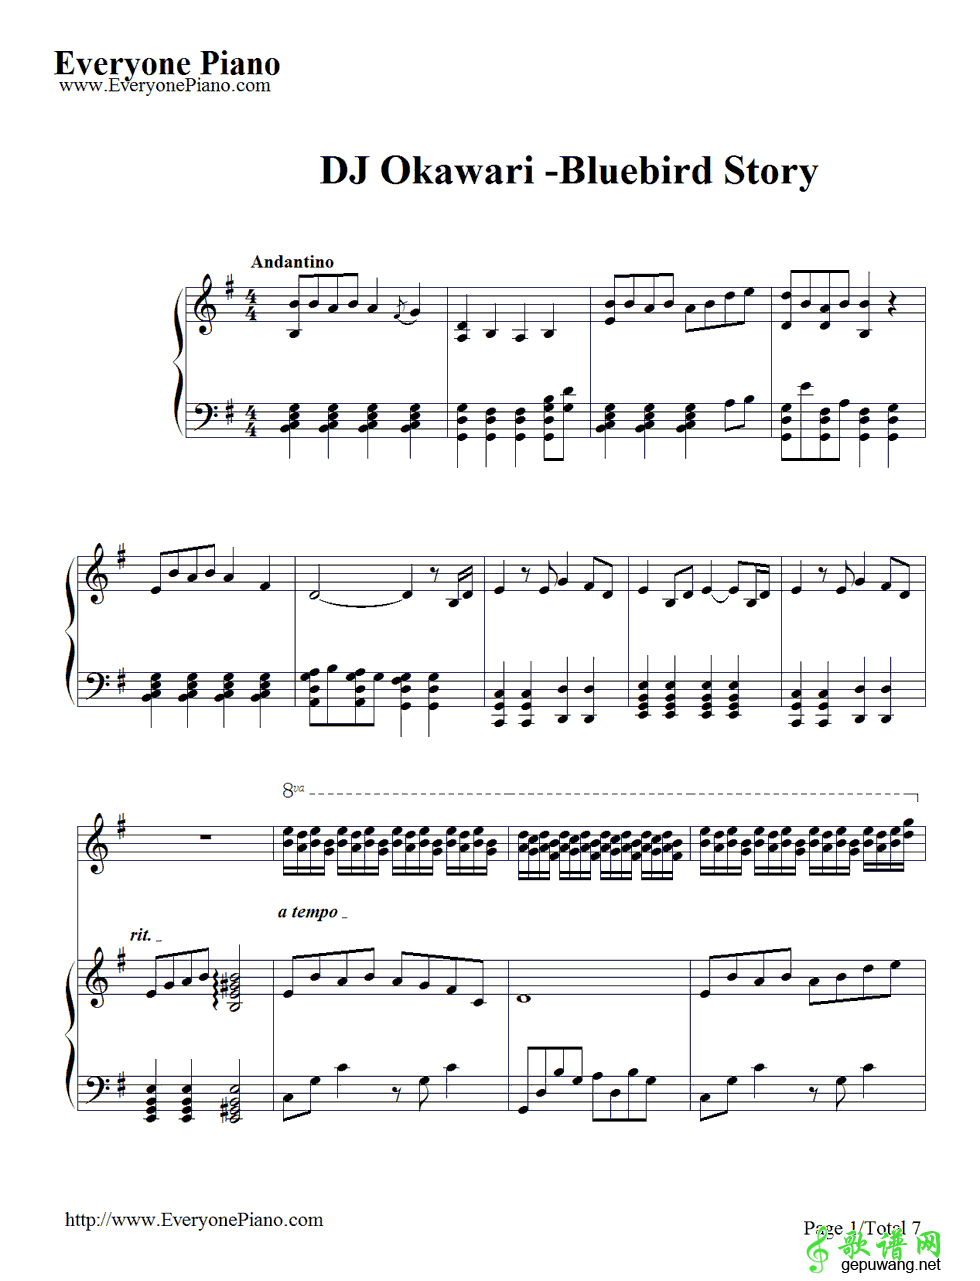 Bluebird Story-DJ OkawariԤ1